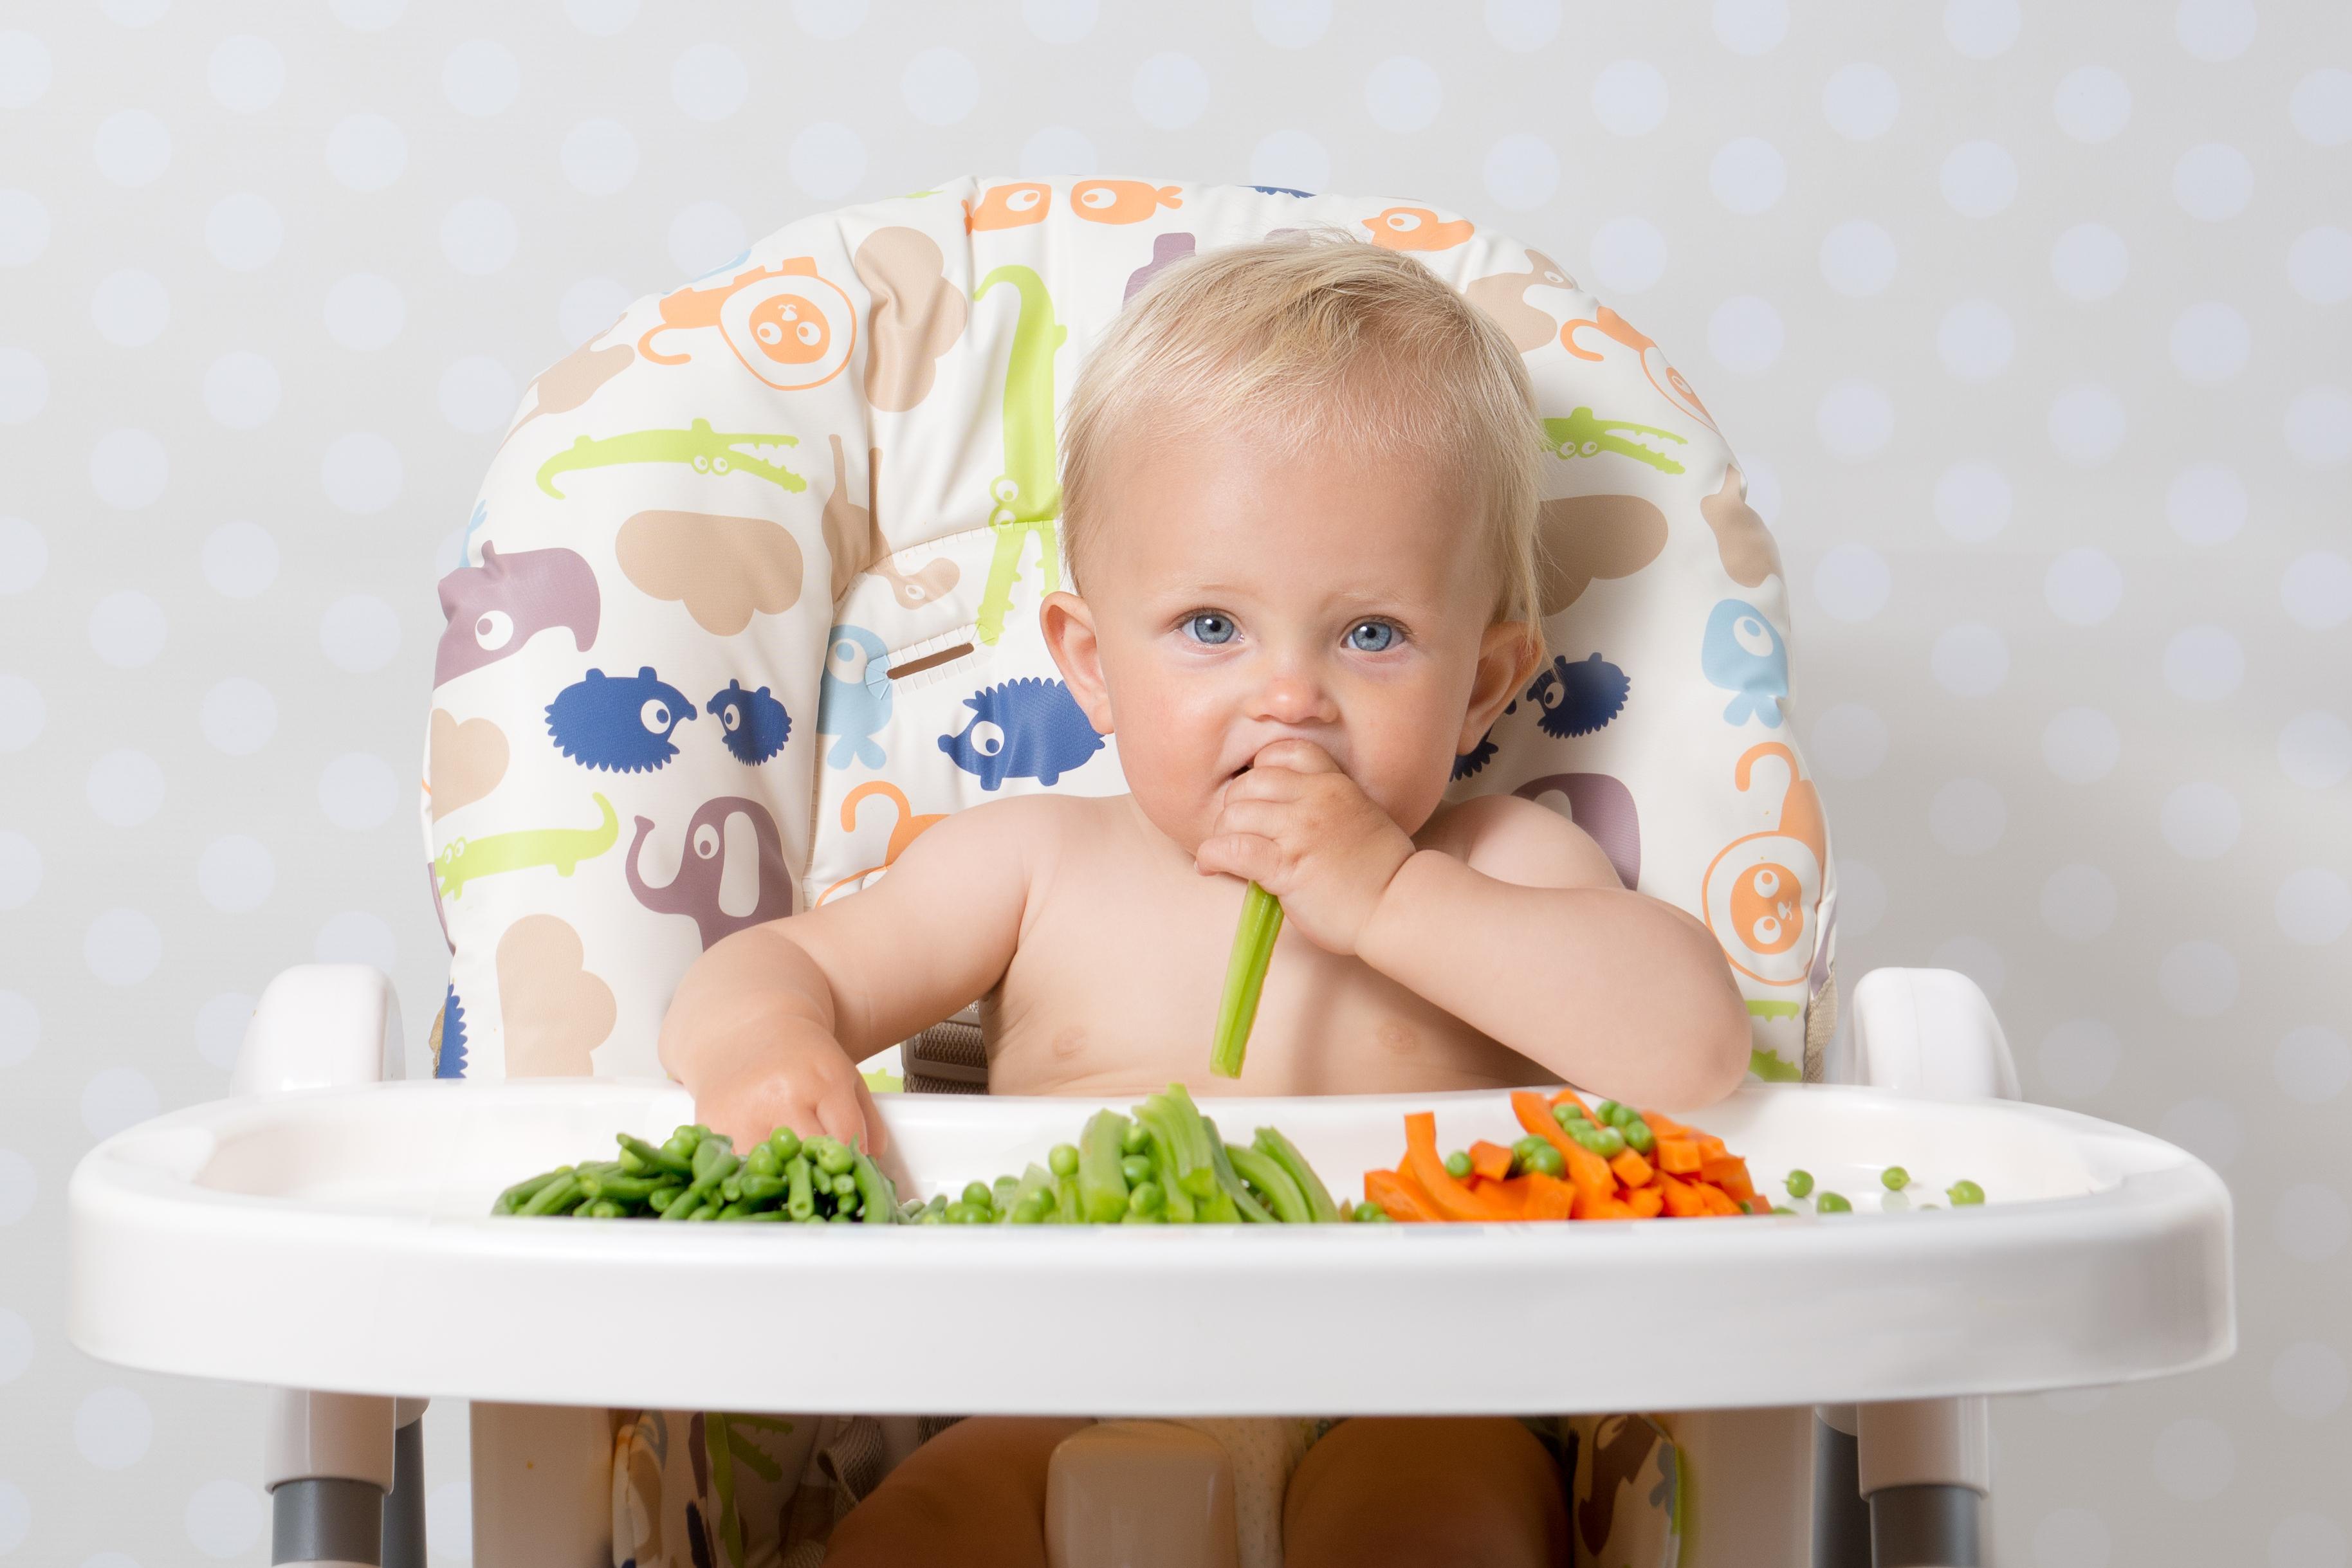 kako beba raste i razvija se dolazi do promjena i u njenim potrebama kada je ishrana u pitanju - Avaz